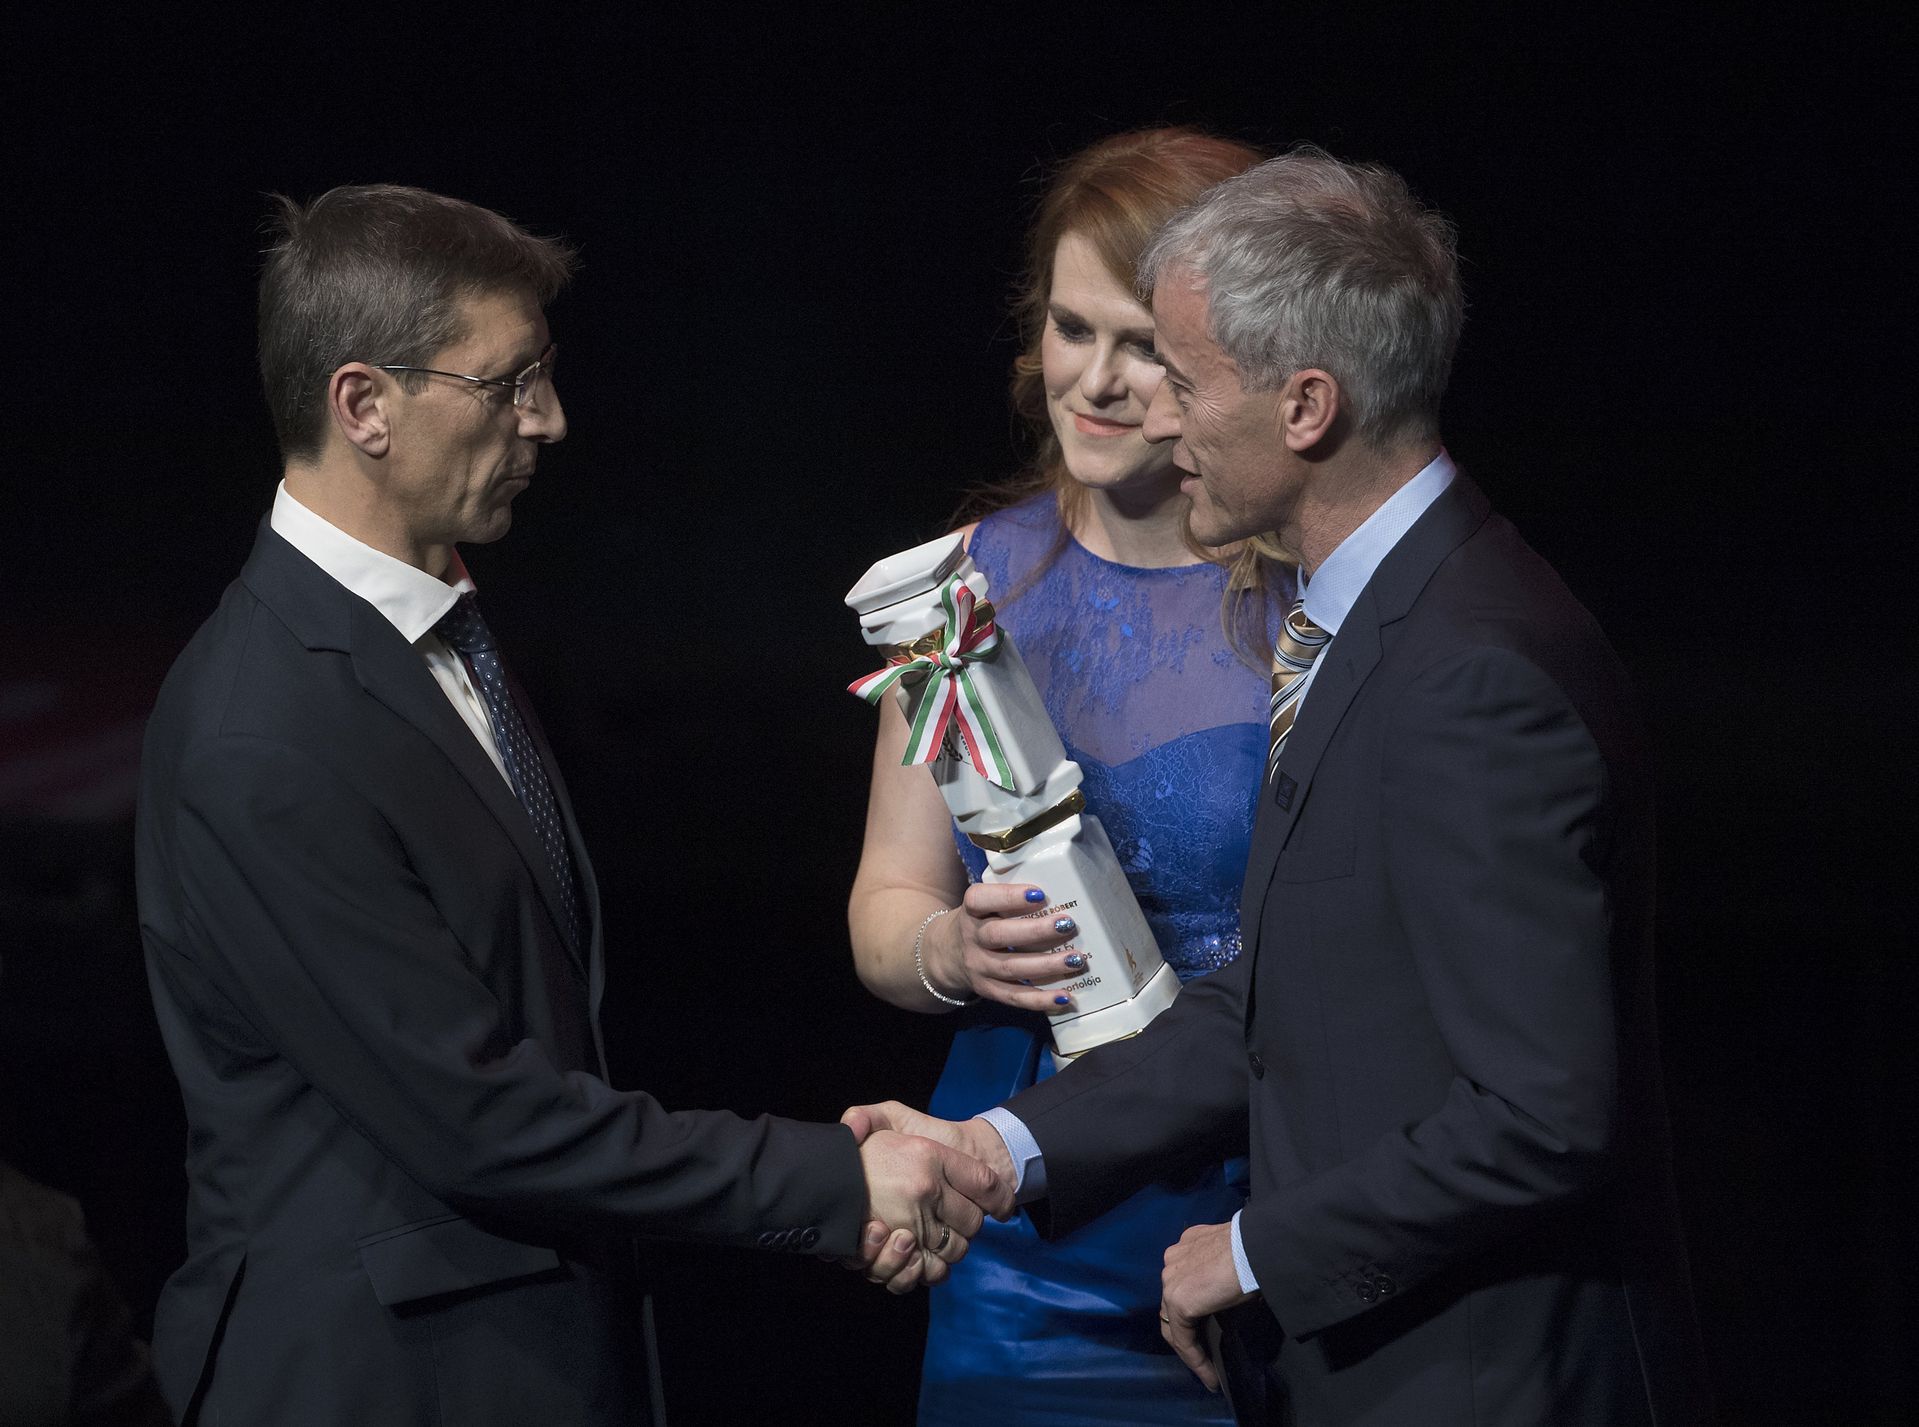 Vörös és Mizsér. A most harcoló elnökjelöltek 2019-ben még békében és barátságban adták át díjat Gelencsér József szervátültetett sportolónak (Fotó: MTI/Ilyés Tibor)